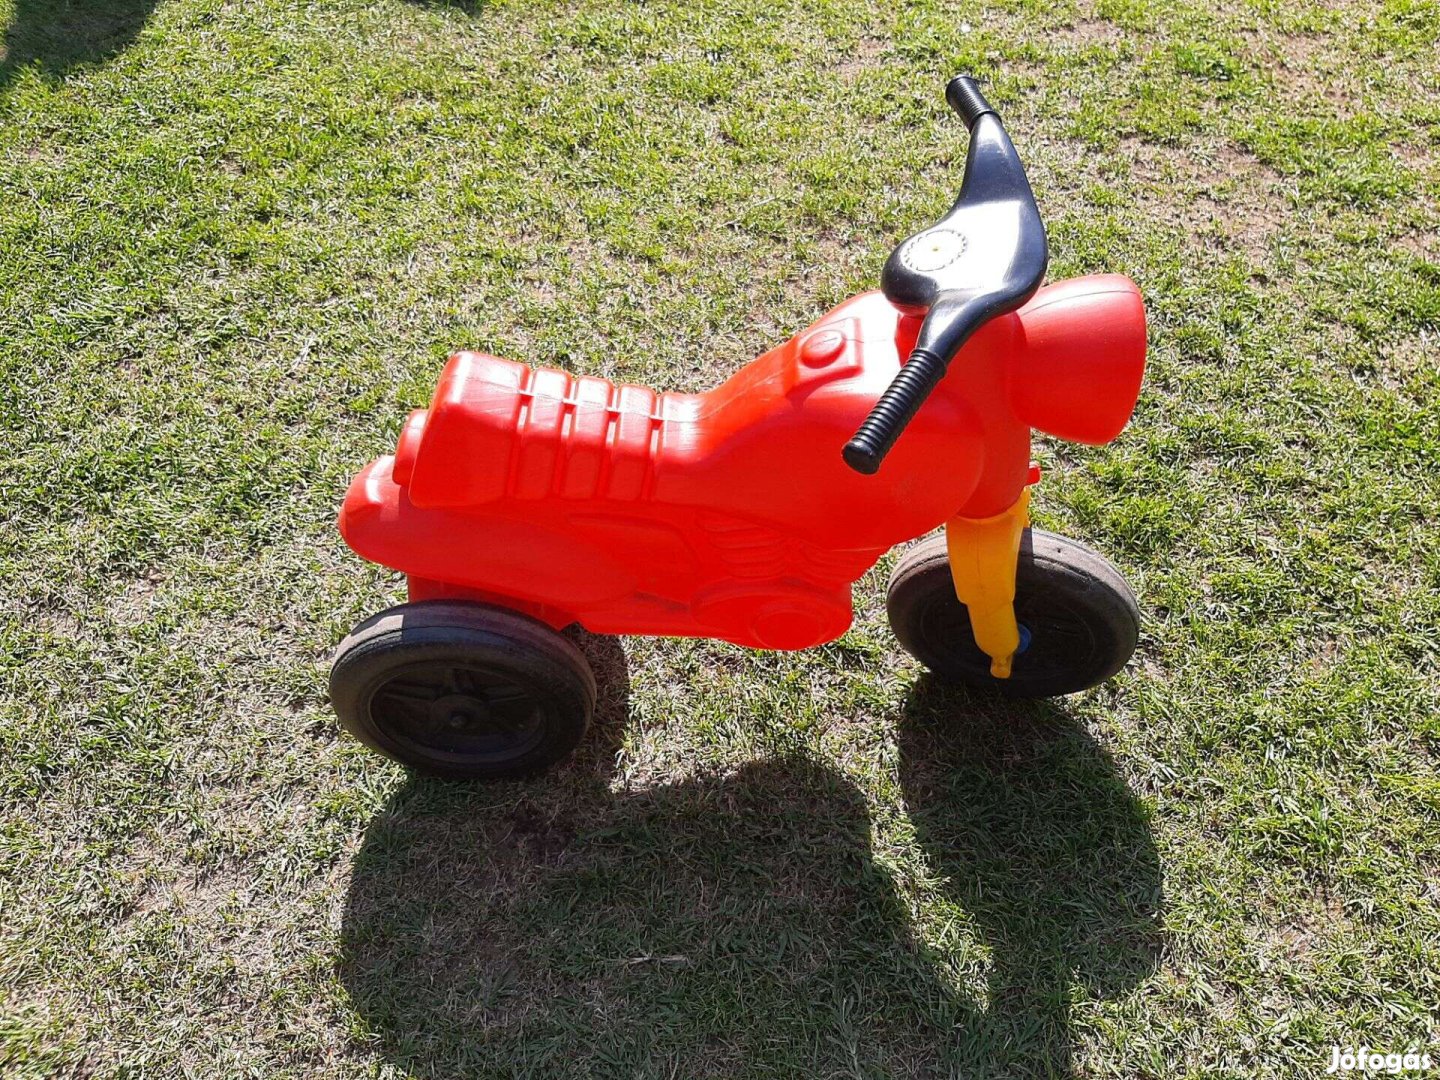 Gyermek játék kismotor piros színben kapható